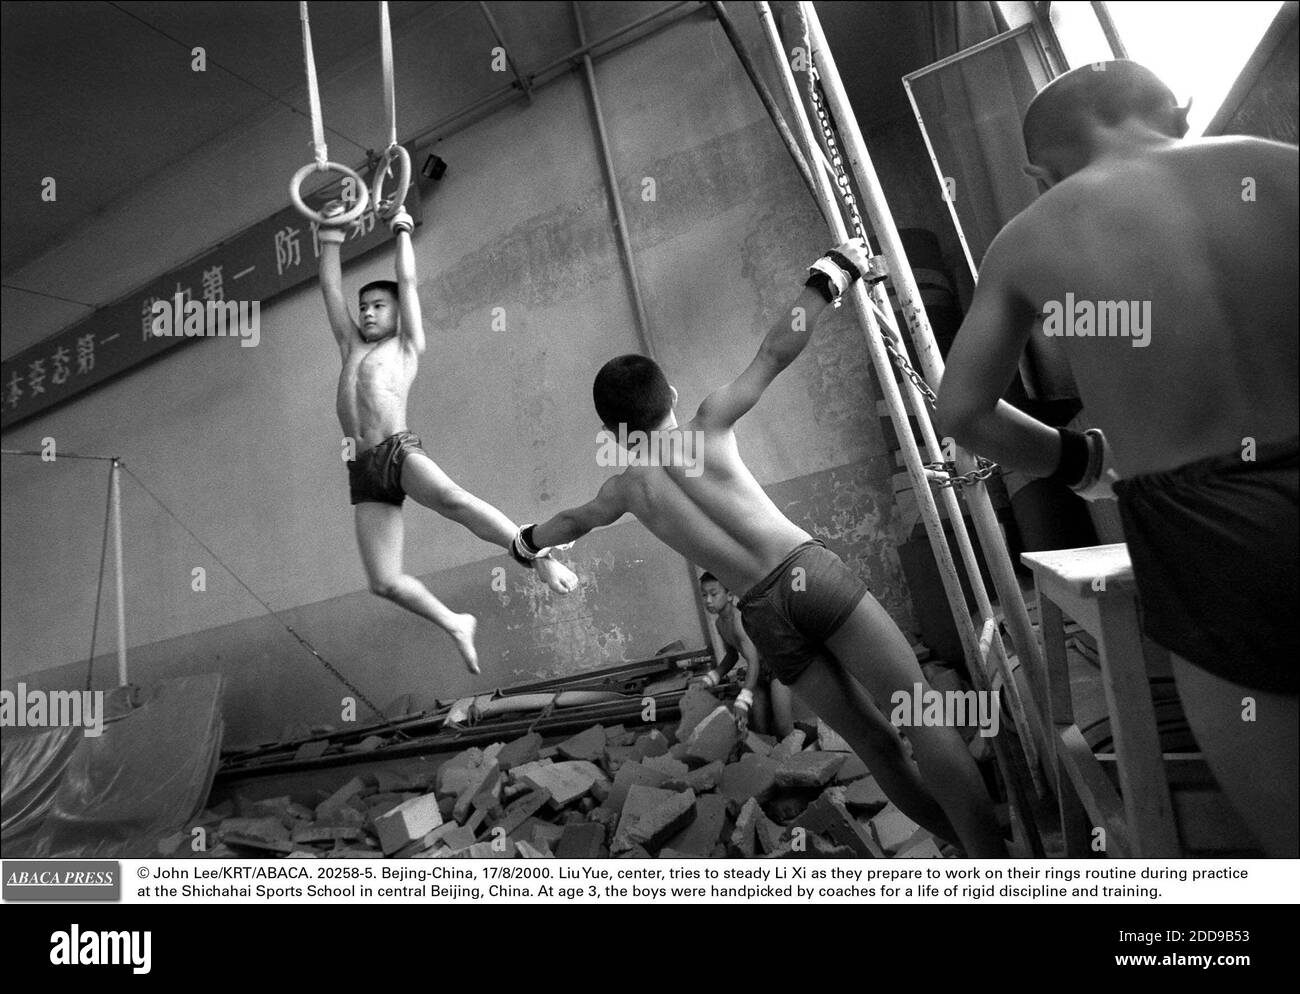 NO HAY CINE, NO HAY VIDEO, NO HAY TELEVISIÓN, NO HAY DOCUMENTAL - © JOHN LEE/KRT/ABACA. 20258-5. Pekín-China, 17/8/2000. Liu Yue, centro, trata de estabilizar a Li Xi mientras se preparan para trabajar en su rutina de anillos durante la práctica en la Escuela de Deportes Shichahai en el centro de Beijing, China. A la edad de 3 años, los chicos fueron seleccionados a mano por c Foto de stock